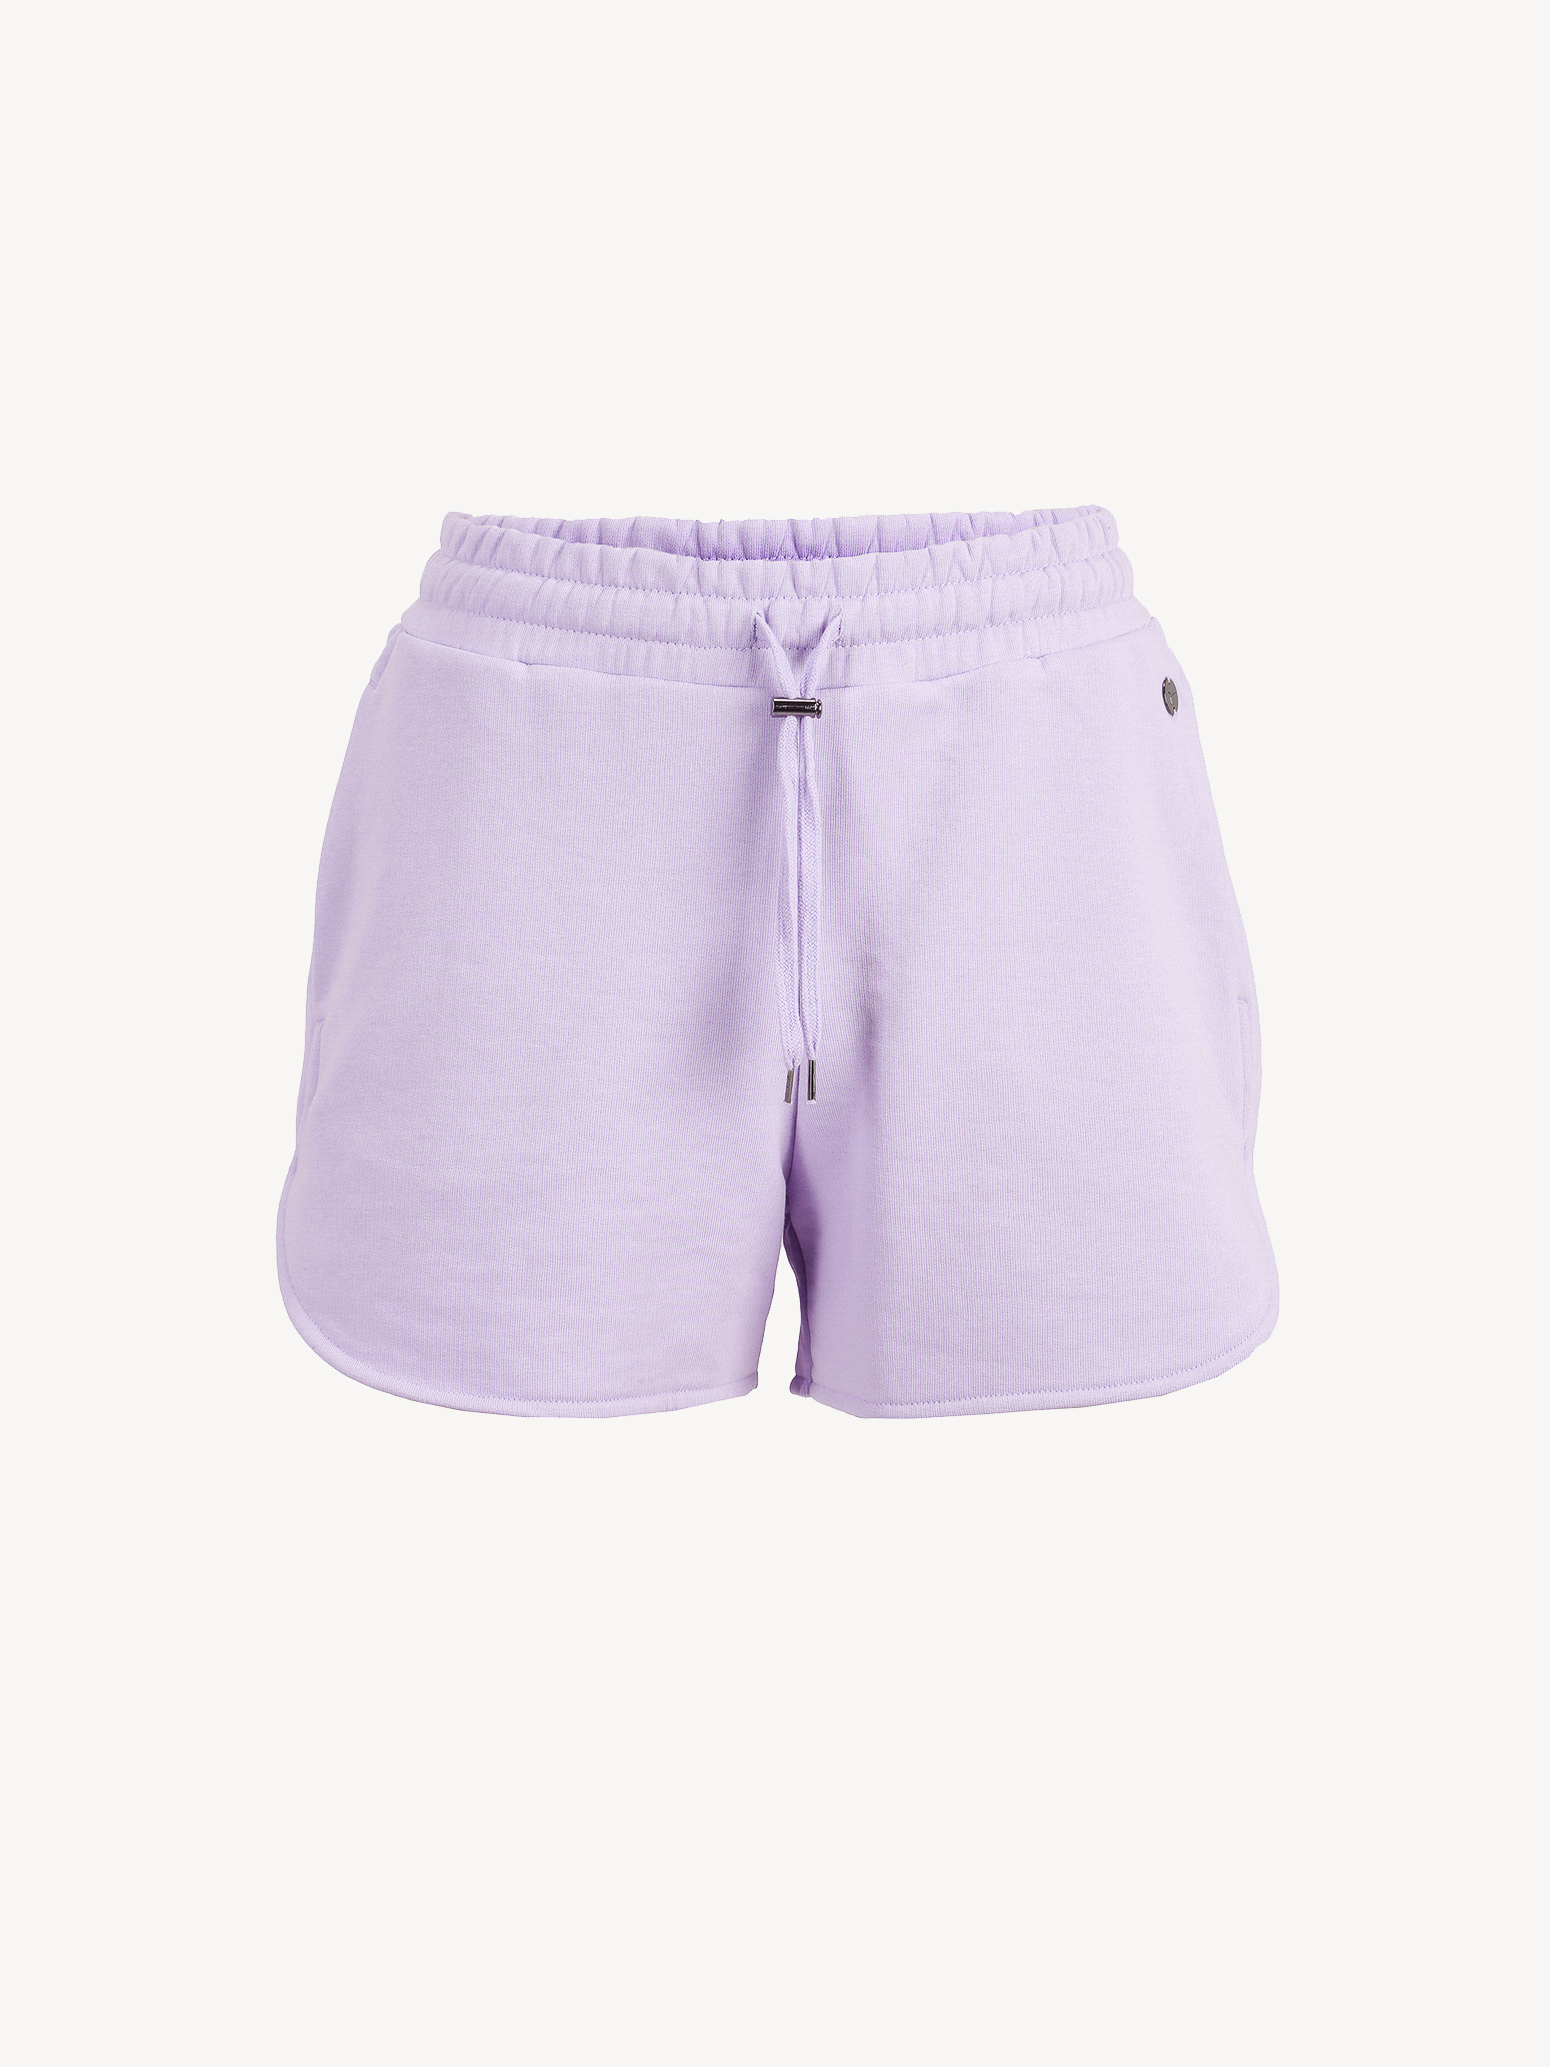 Spodnie do joggingu lila - XL